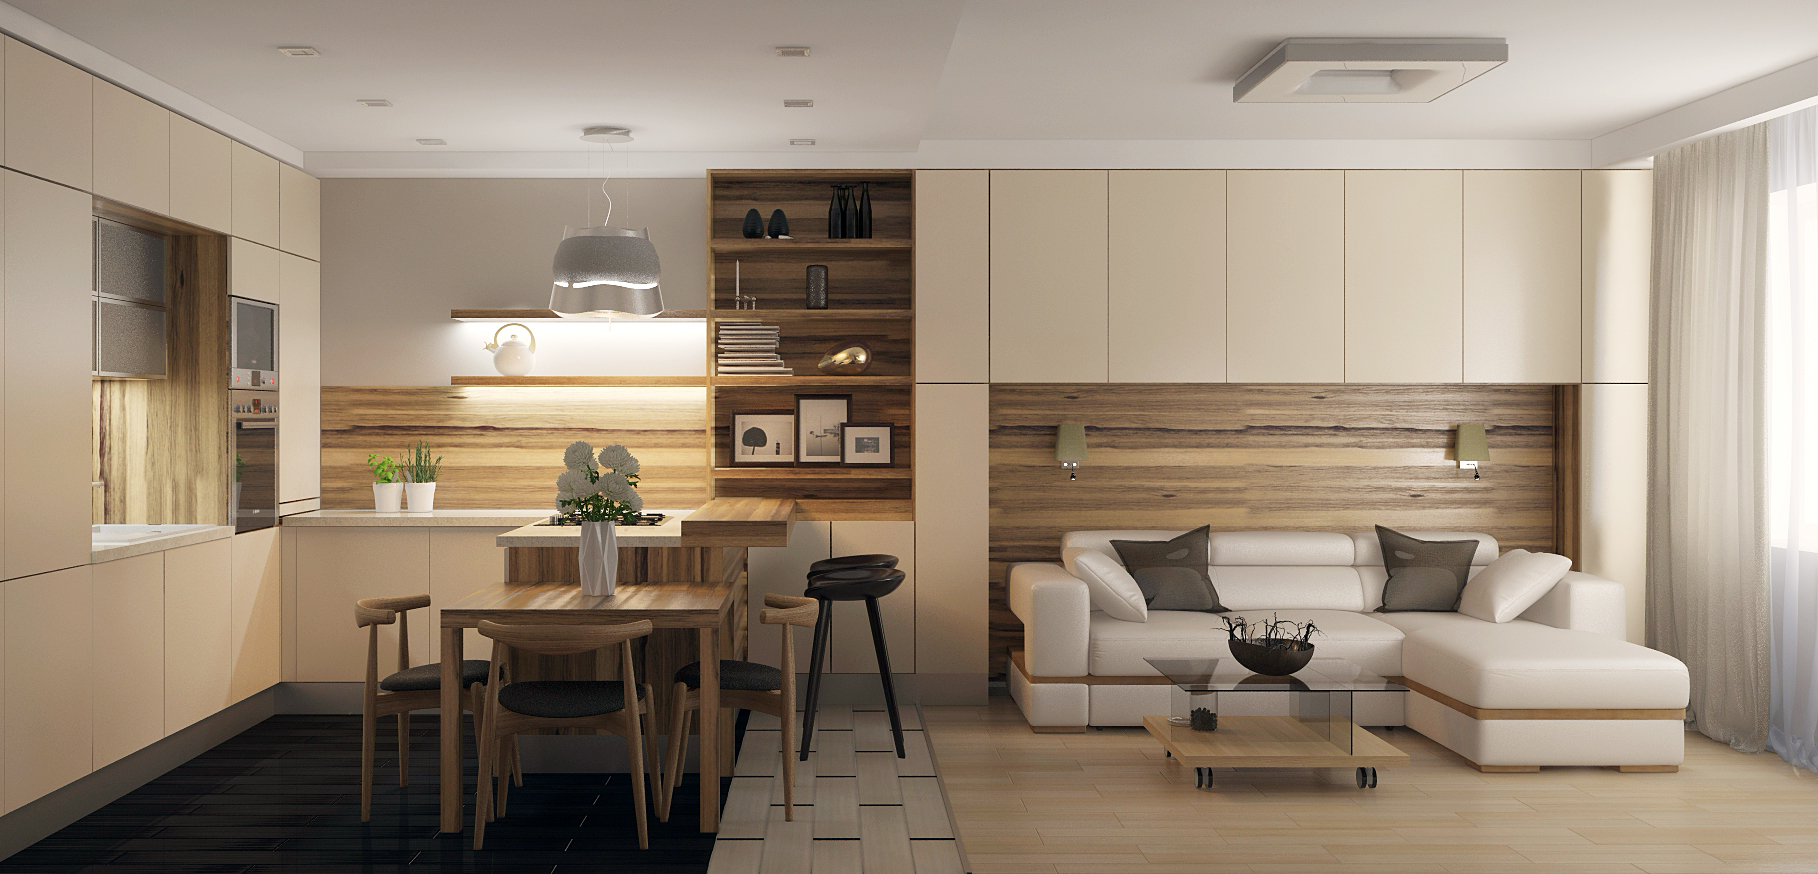 Создаем стильный интерьер гостиной-кухни площадью 20 кв. метров без дополнительных расходов!